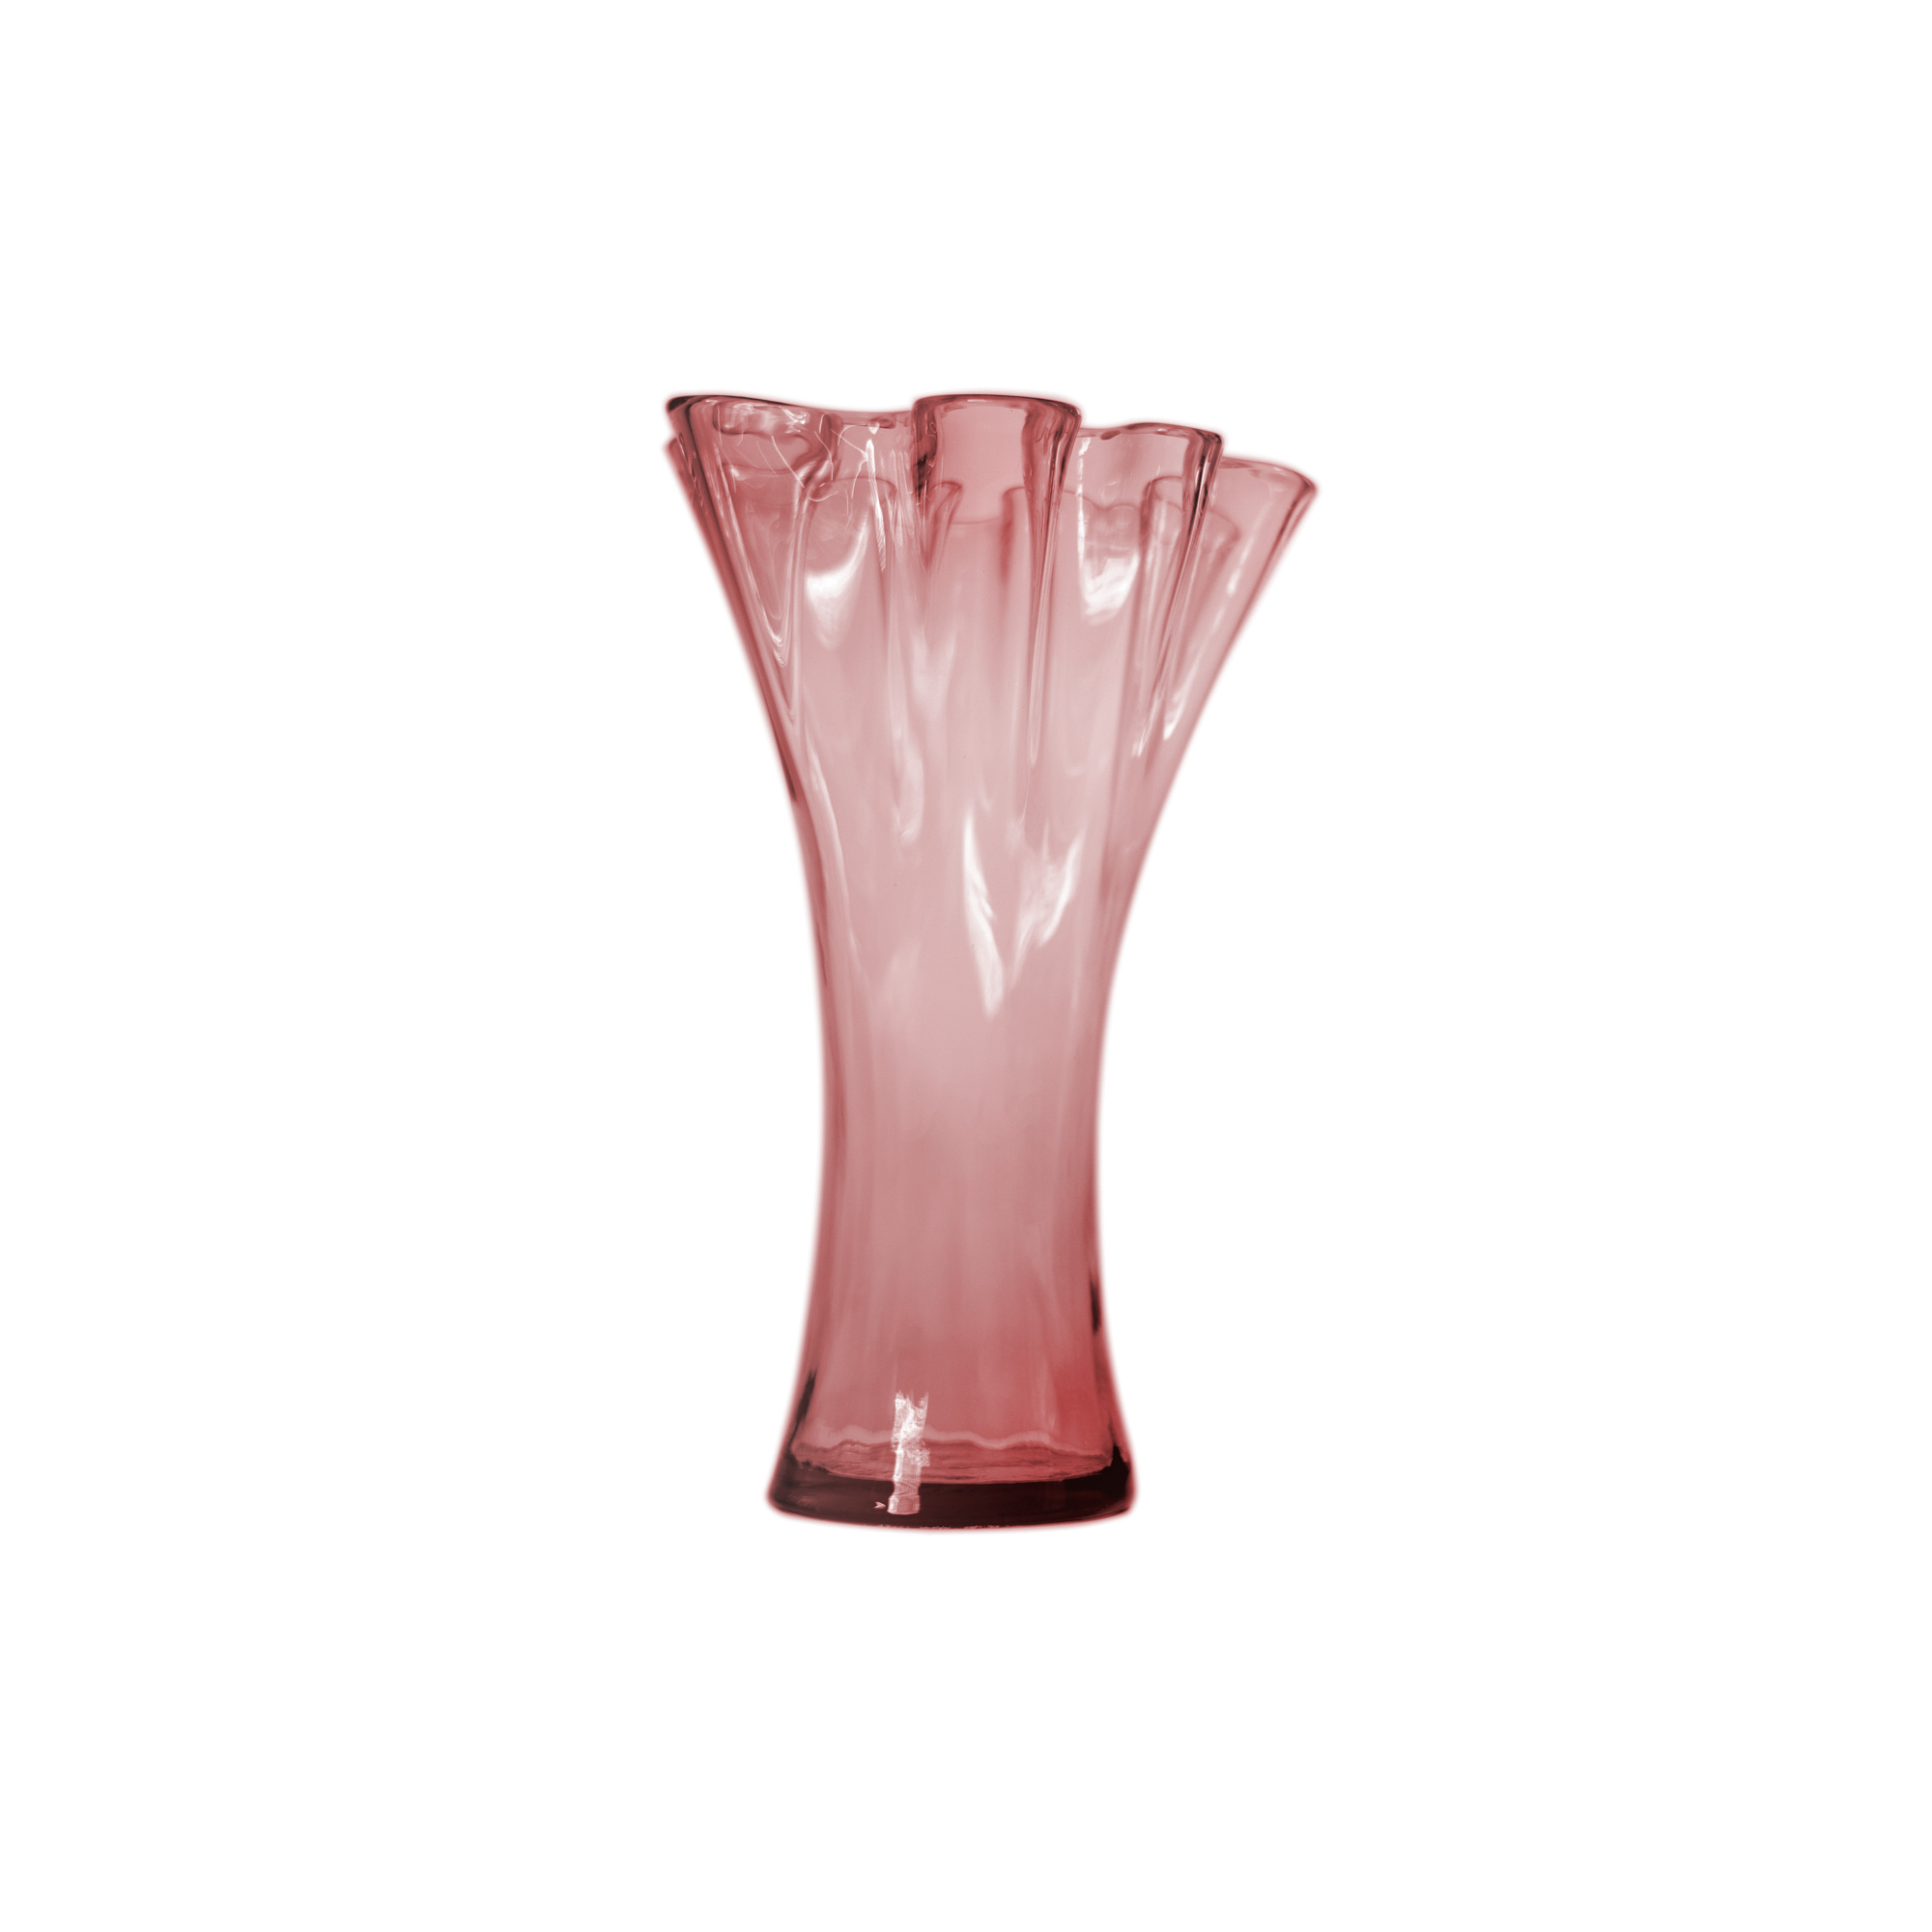 Ваза San miguel Artesania розовый 30 см ваза san miguel antic коричневая 24 см